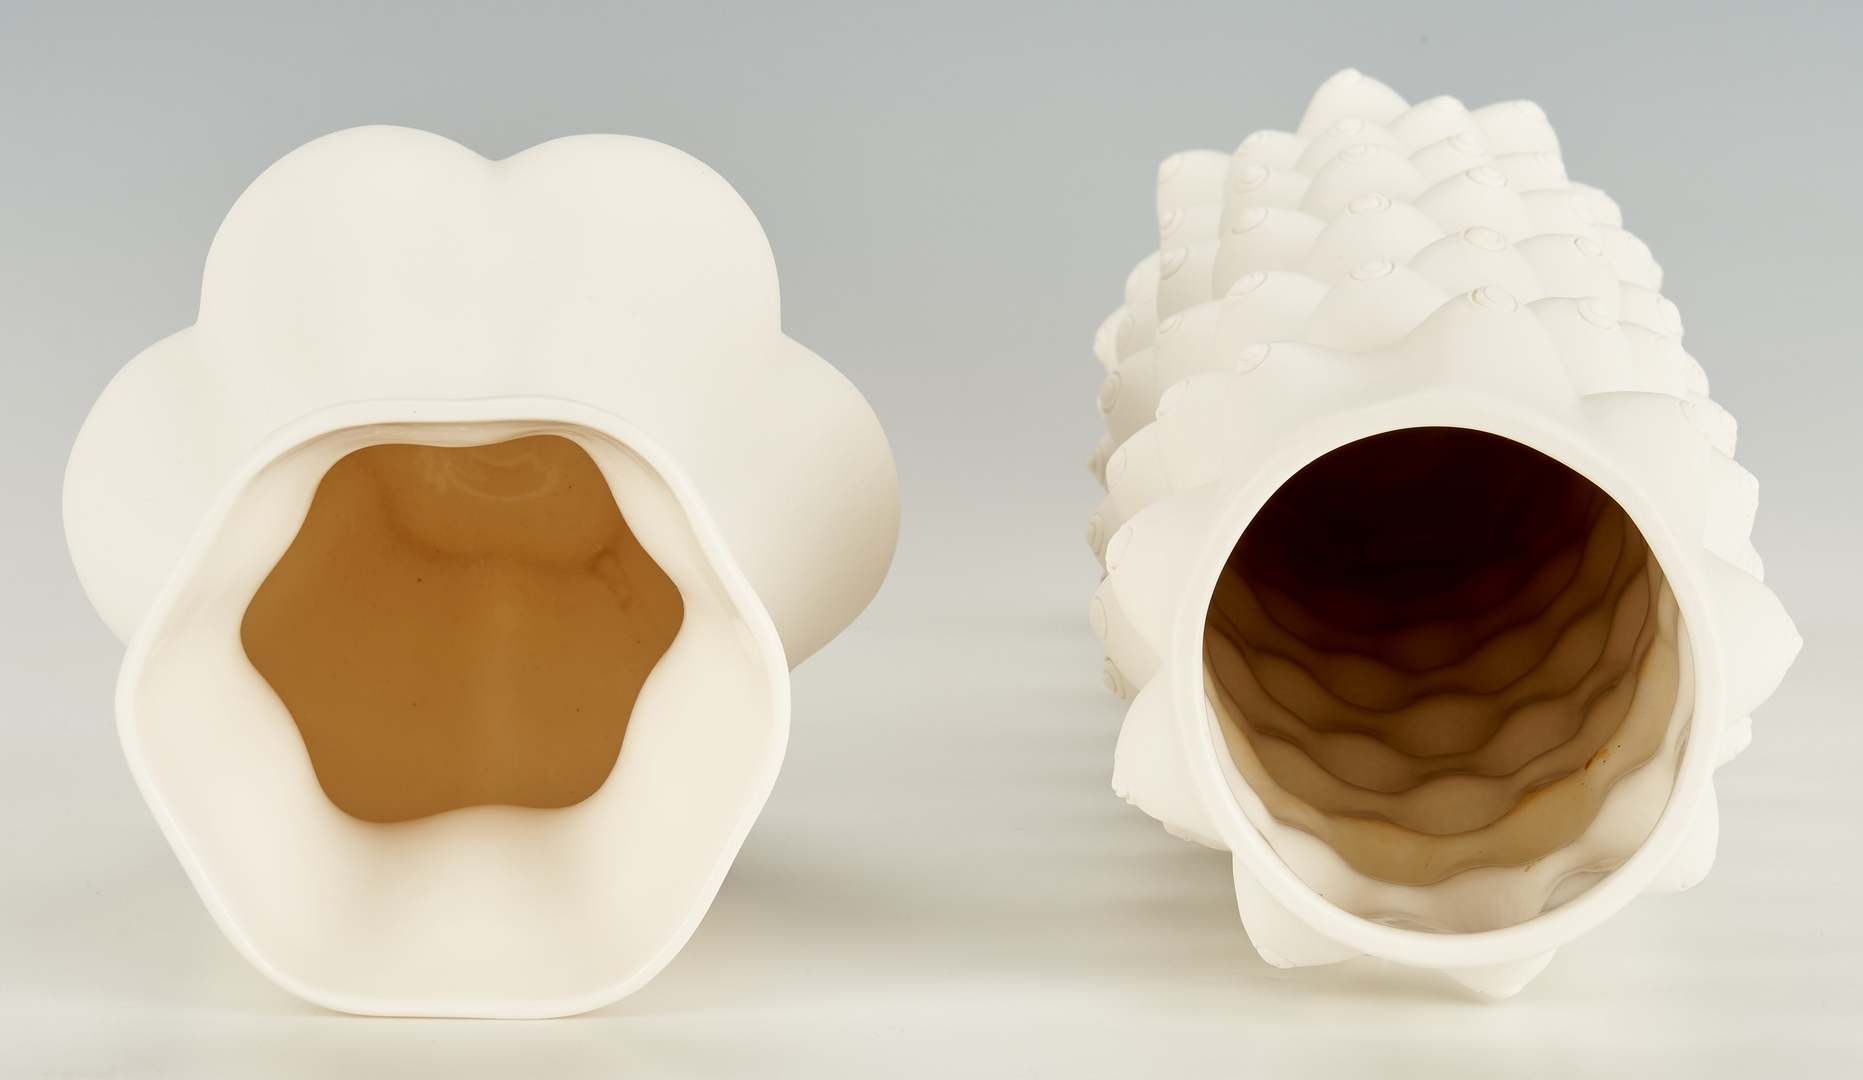 Lot 222: 2 Jonathan Adler White Ceramic Vases